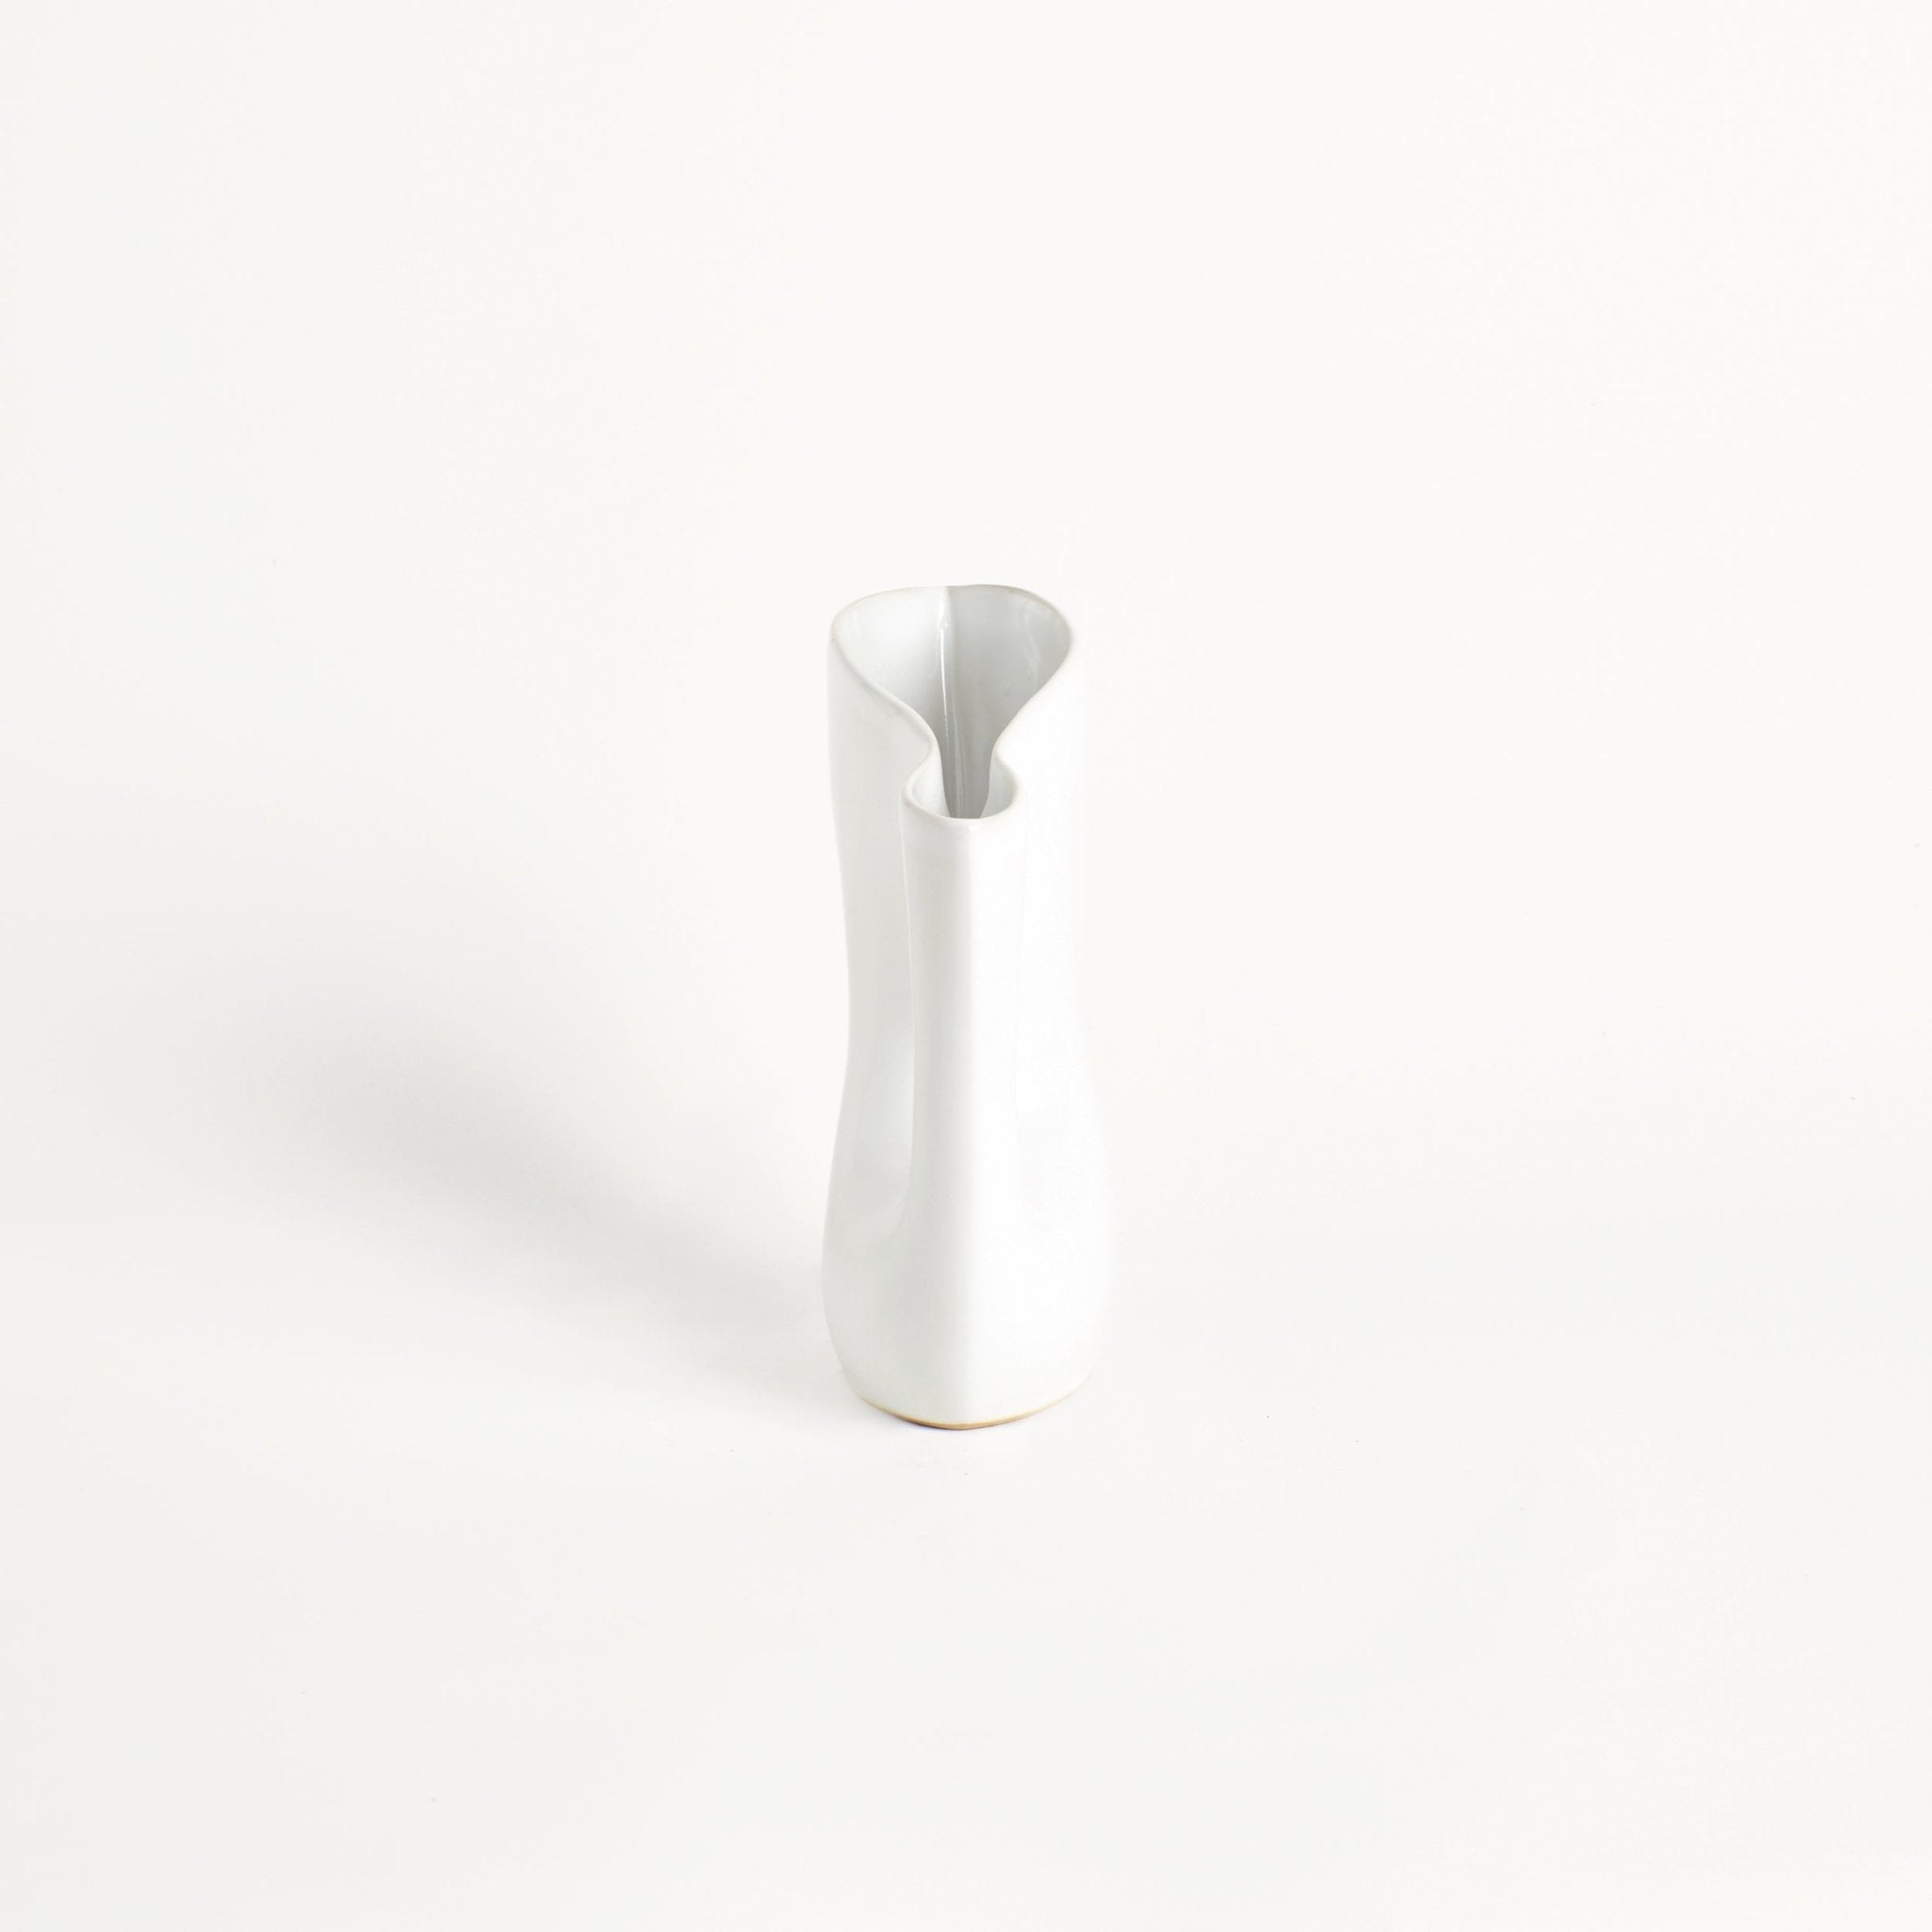 Mamasita Jug - Weiss Vase von Project 213A